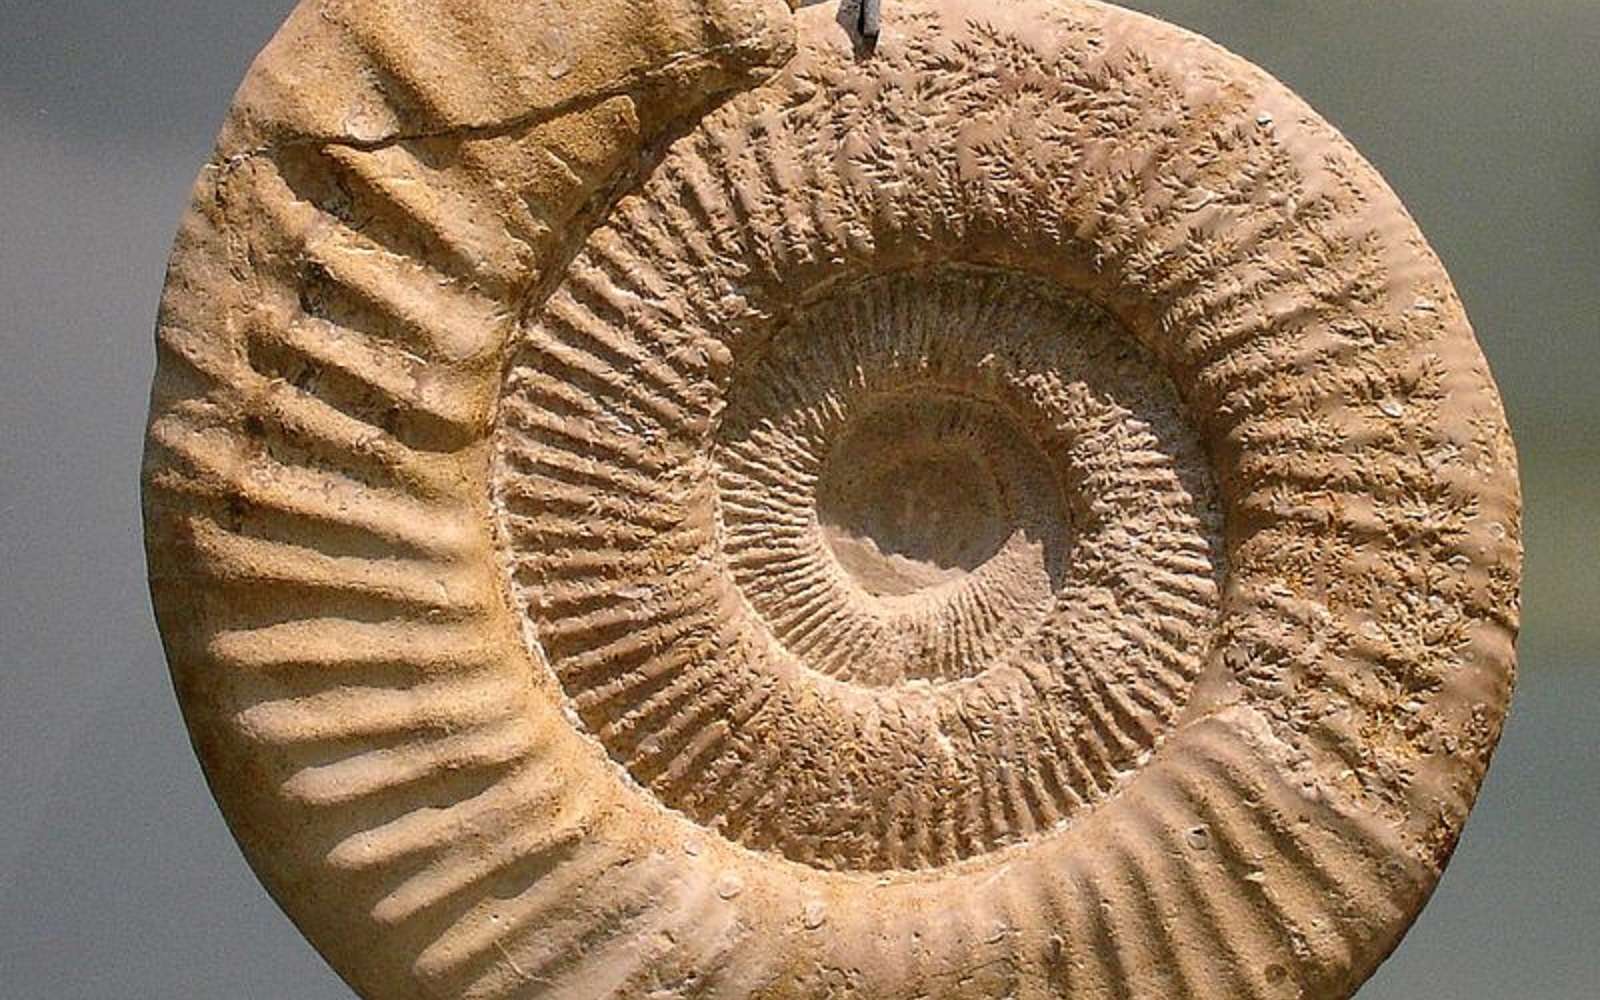 Un exemple de coquille d’ammonite symétrique. © I, Masur, Wikimedia Commons, CC by-sa 3.0